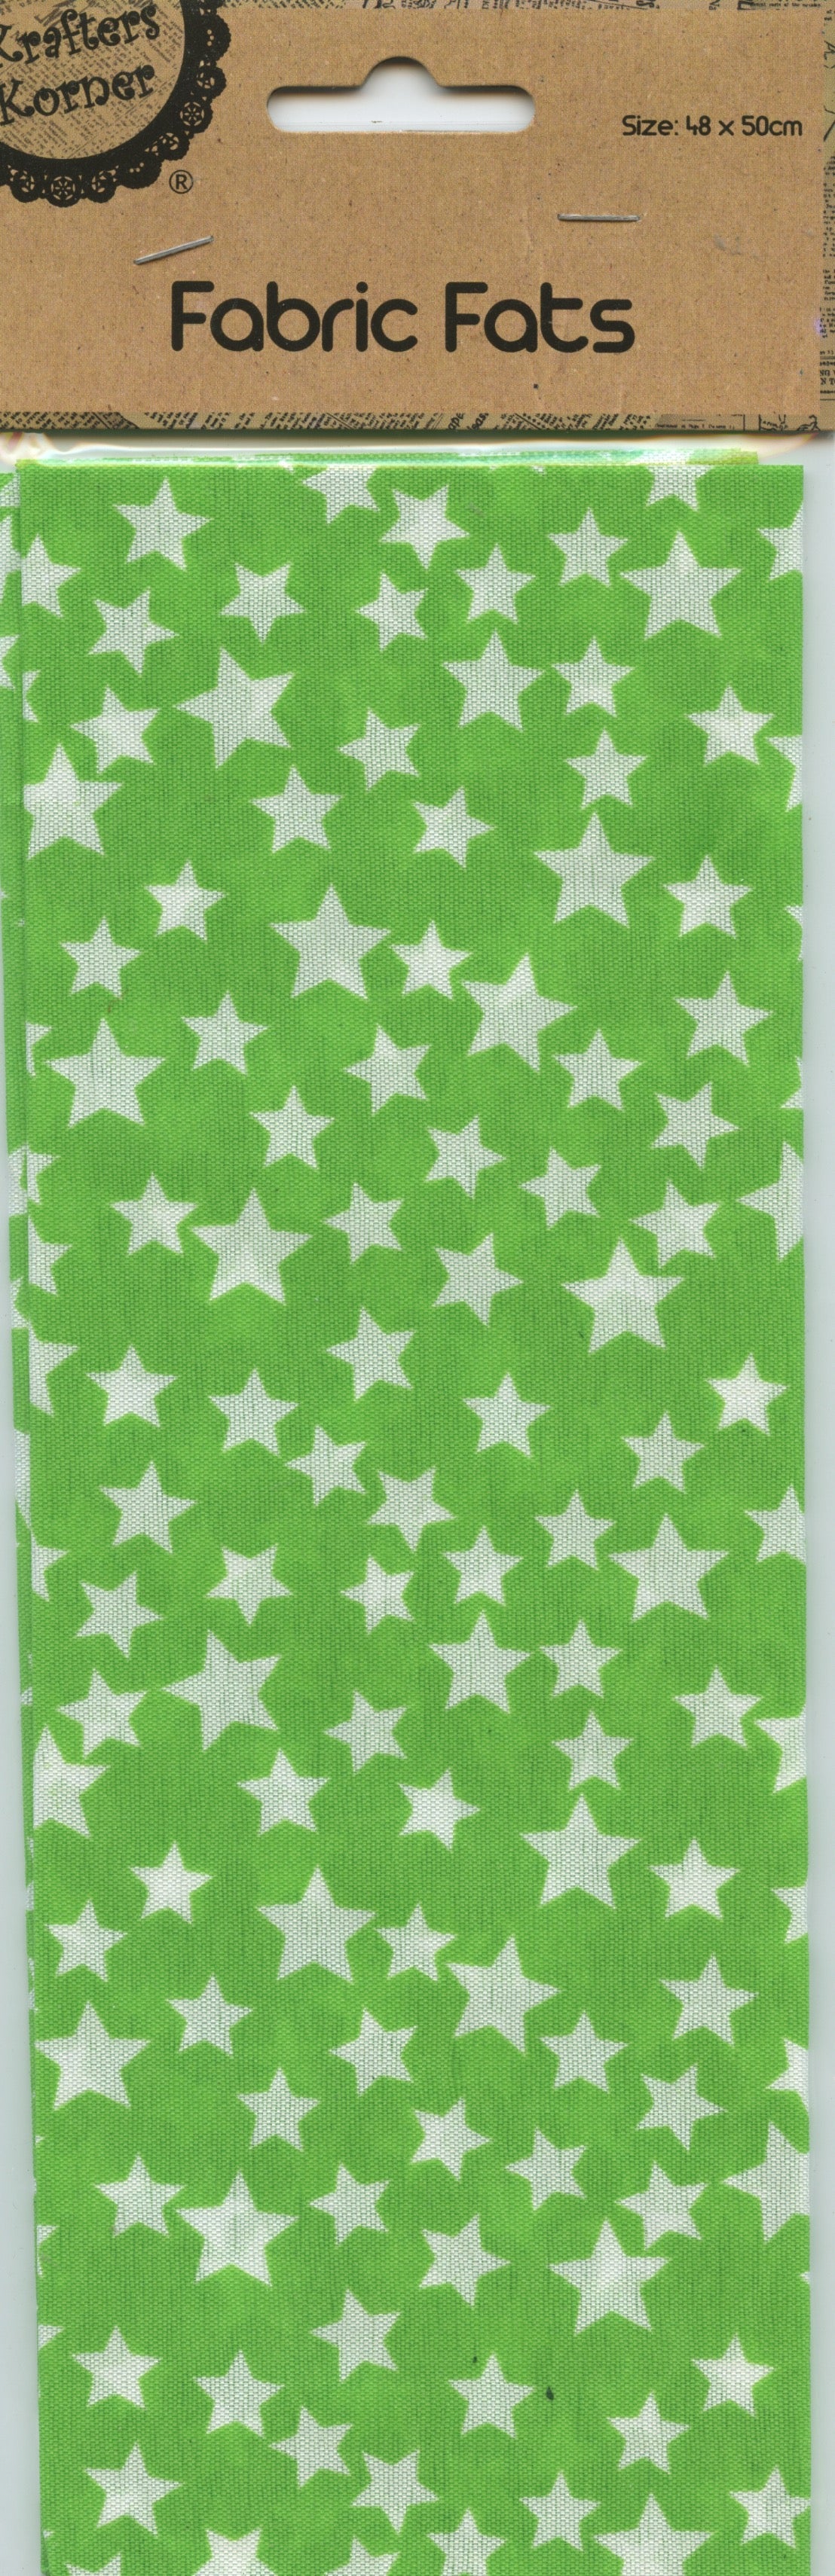 Craft Fabric Fats Stars - 48x50cm- Green